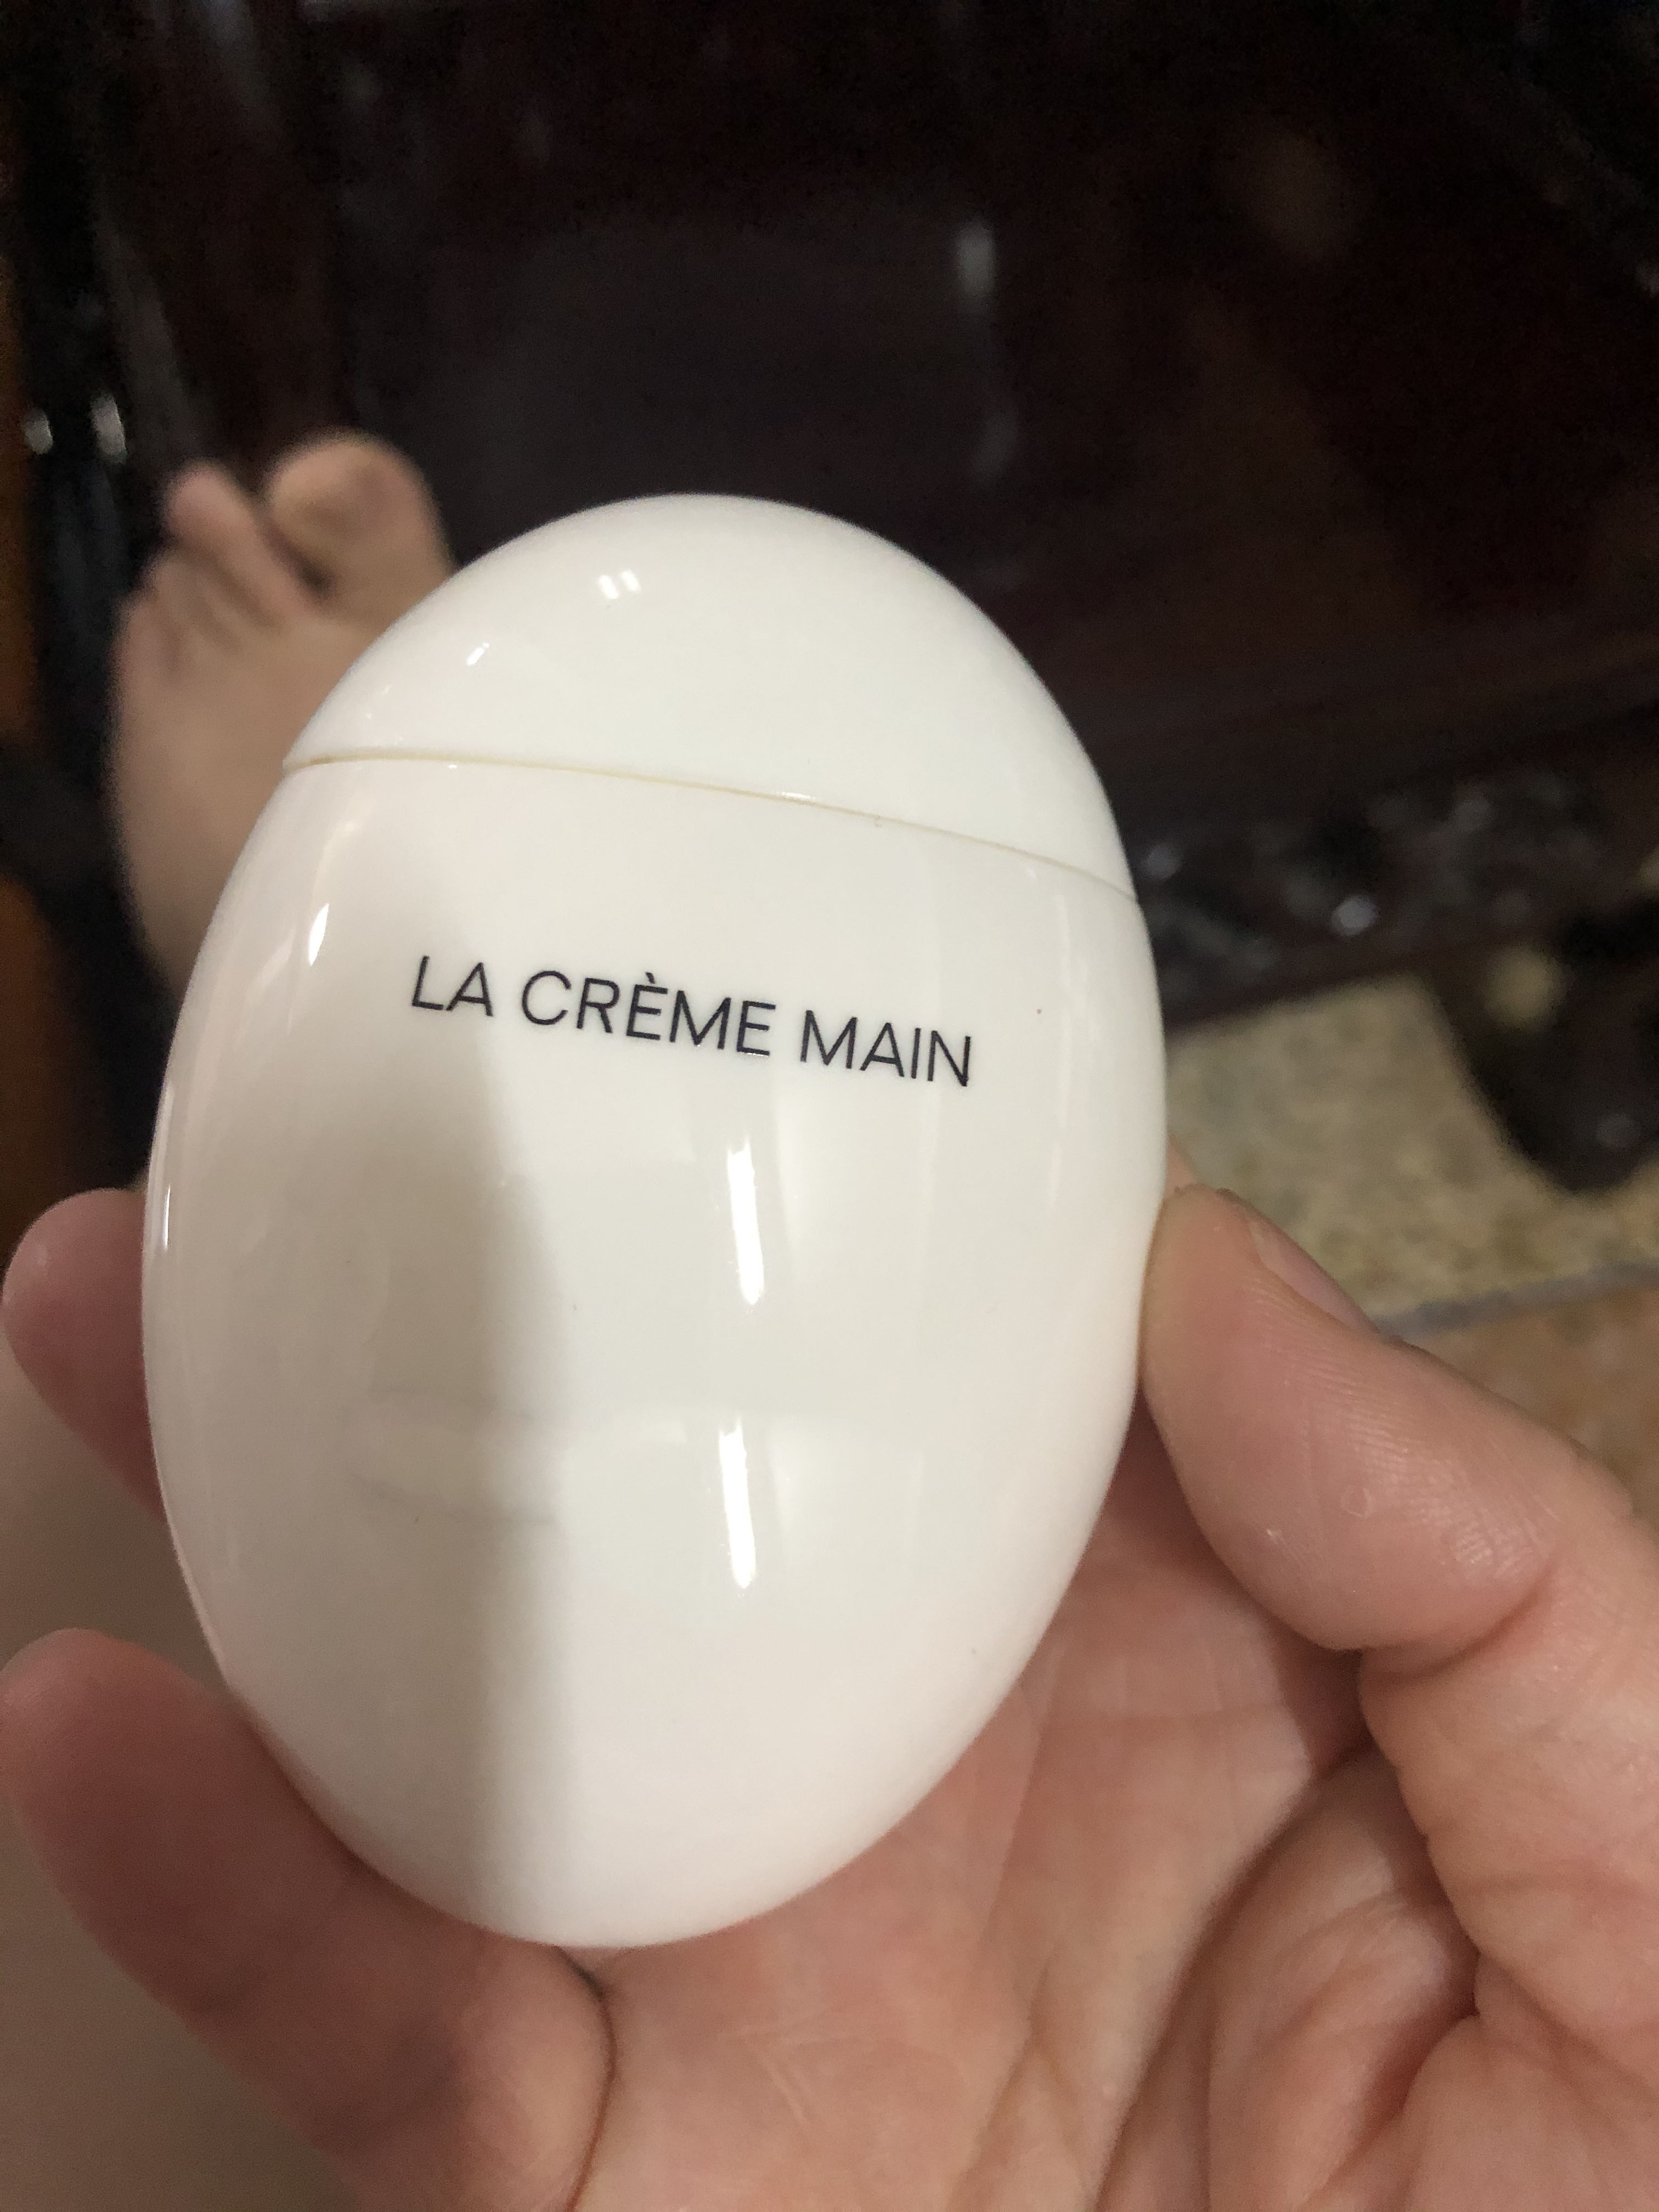 крем для рук известного бренда LE LIFT LA CREME MAIN черный яичный белок яичный крем для рук уход за кожей premierlash высокое качество